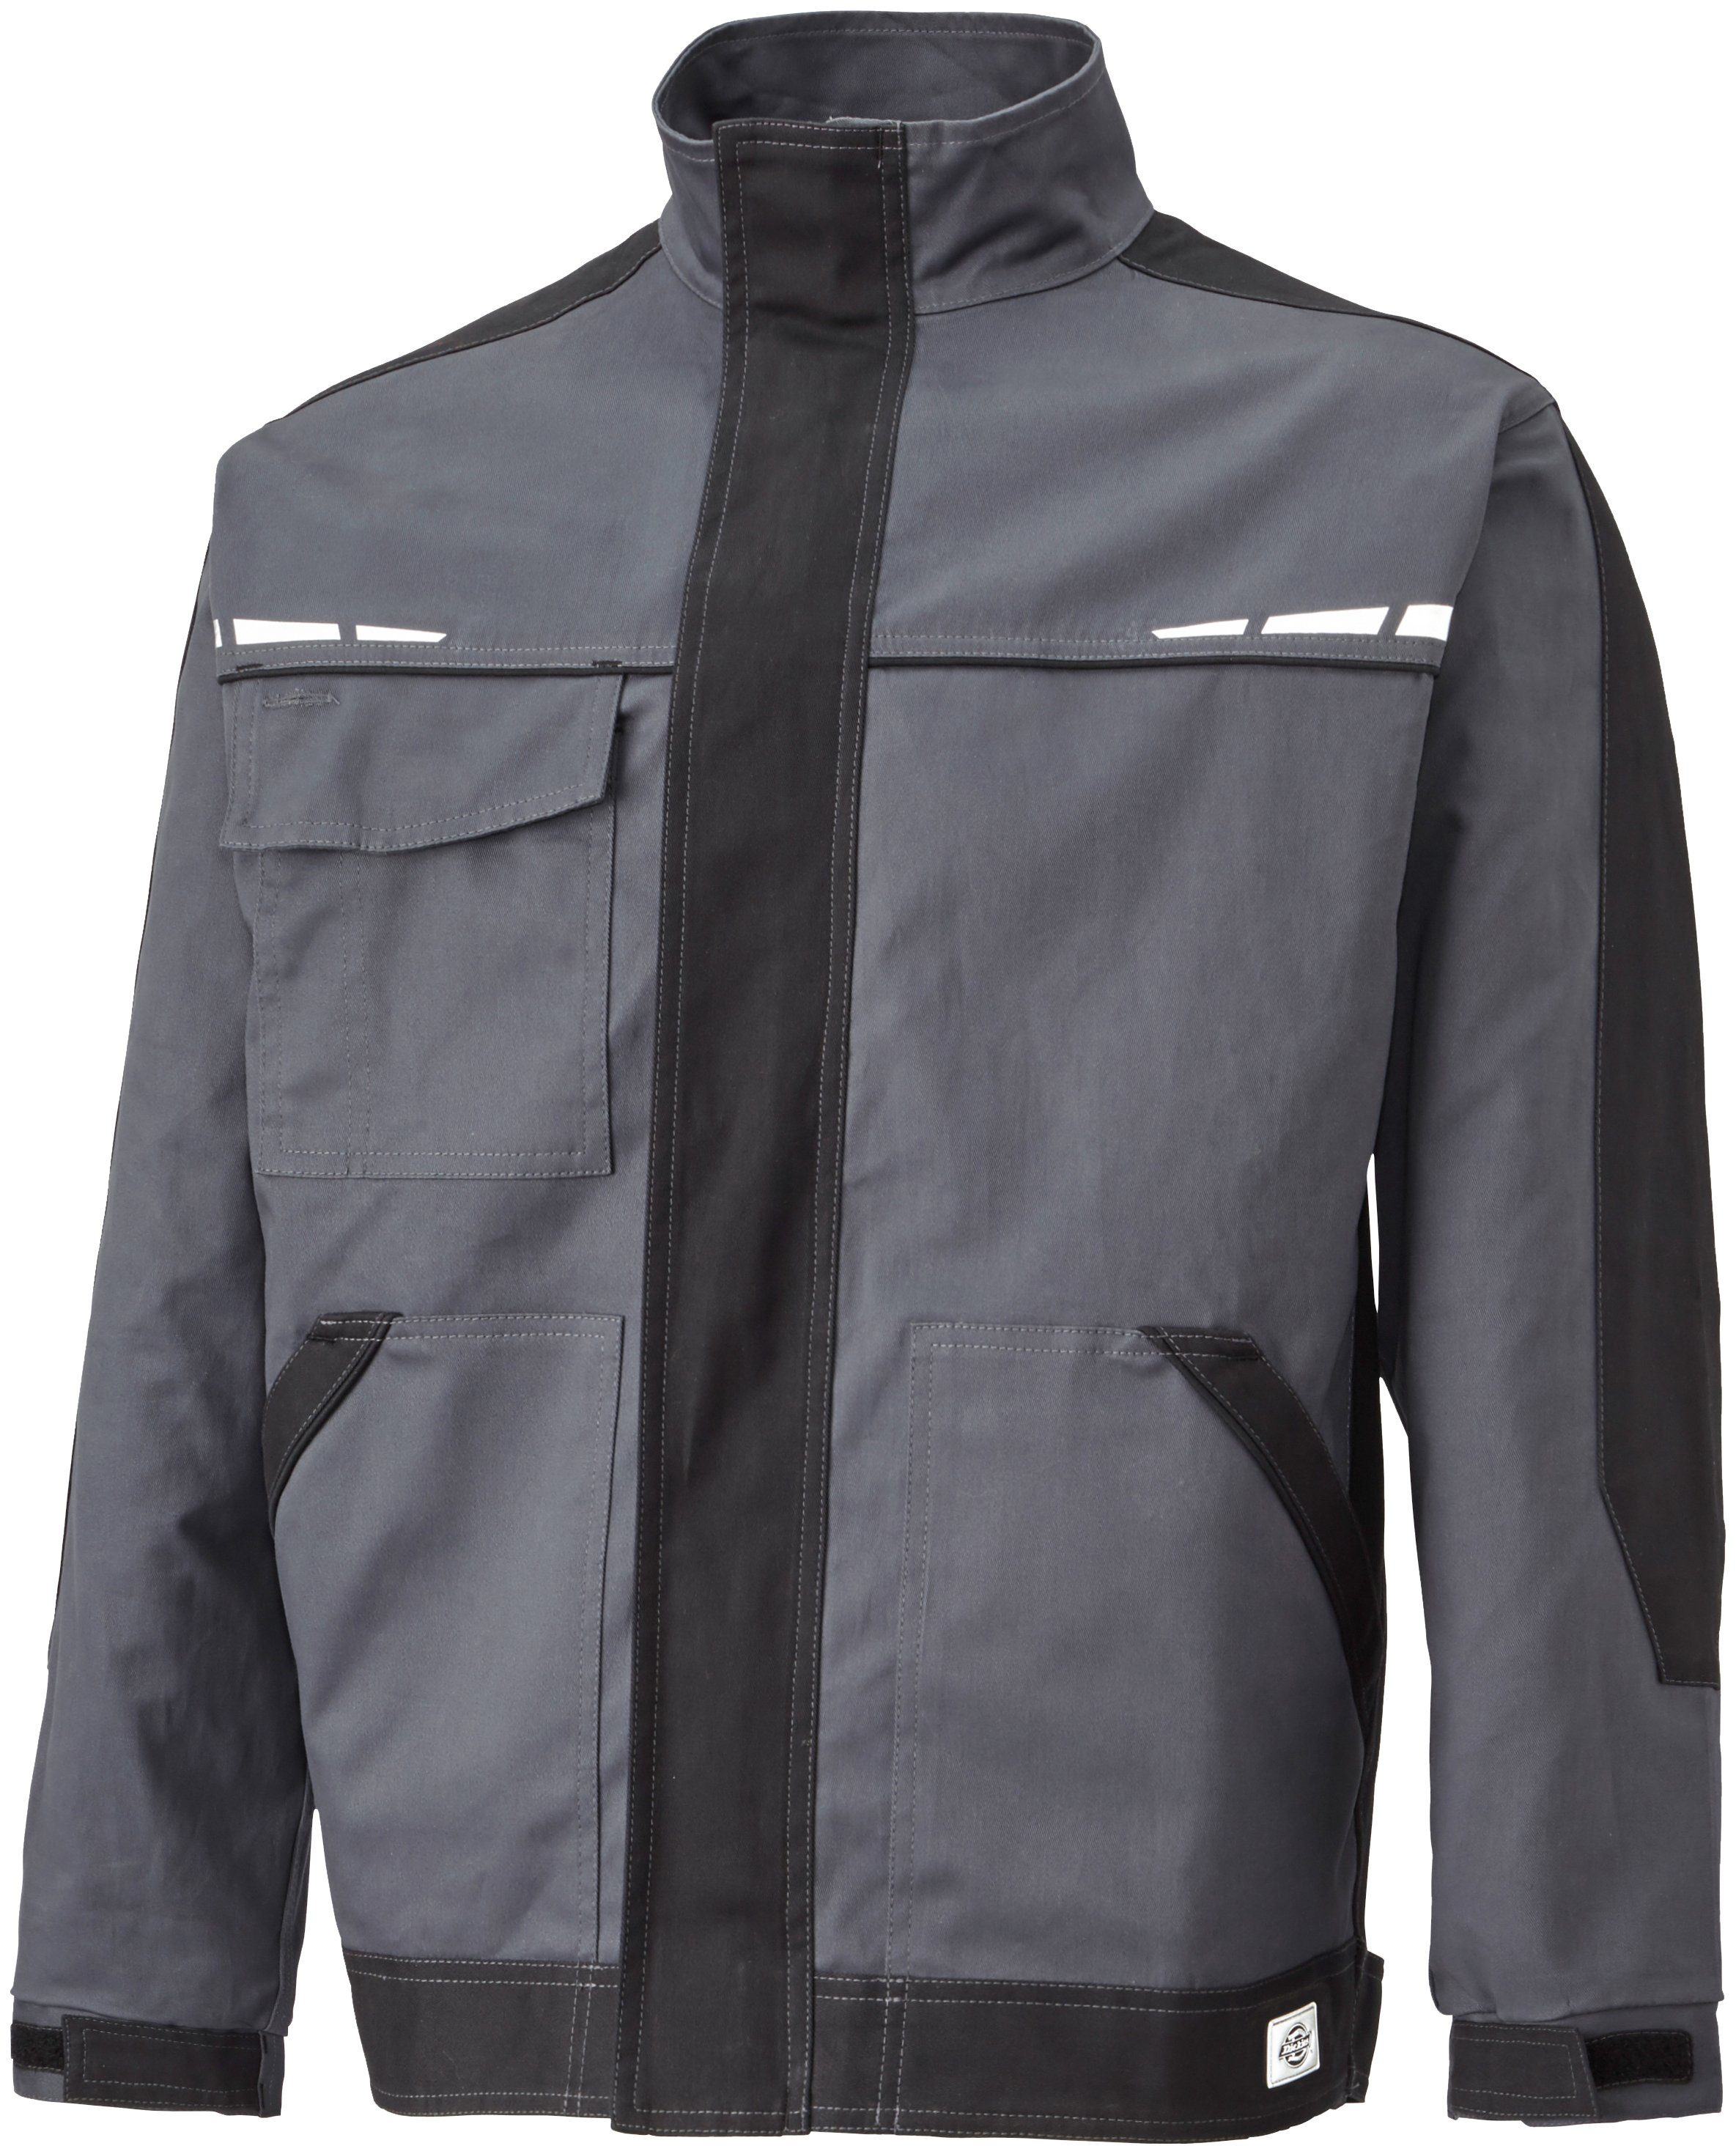 Designelemente Reflektierende grau-schwarz Arbeitsjacke Dickies Premium GDT